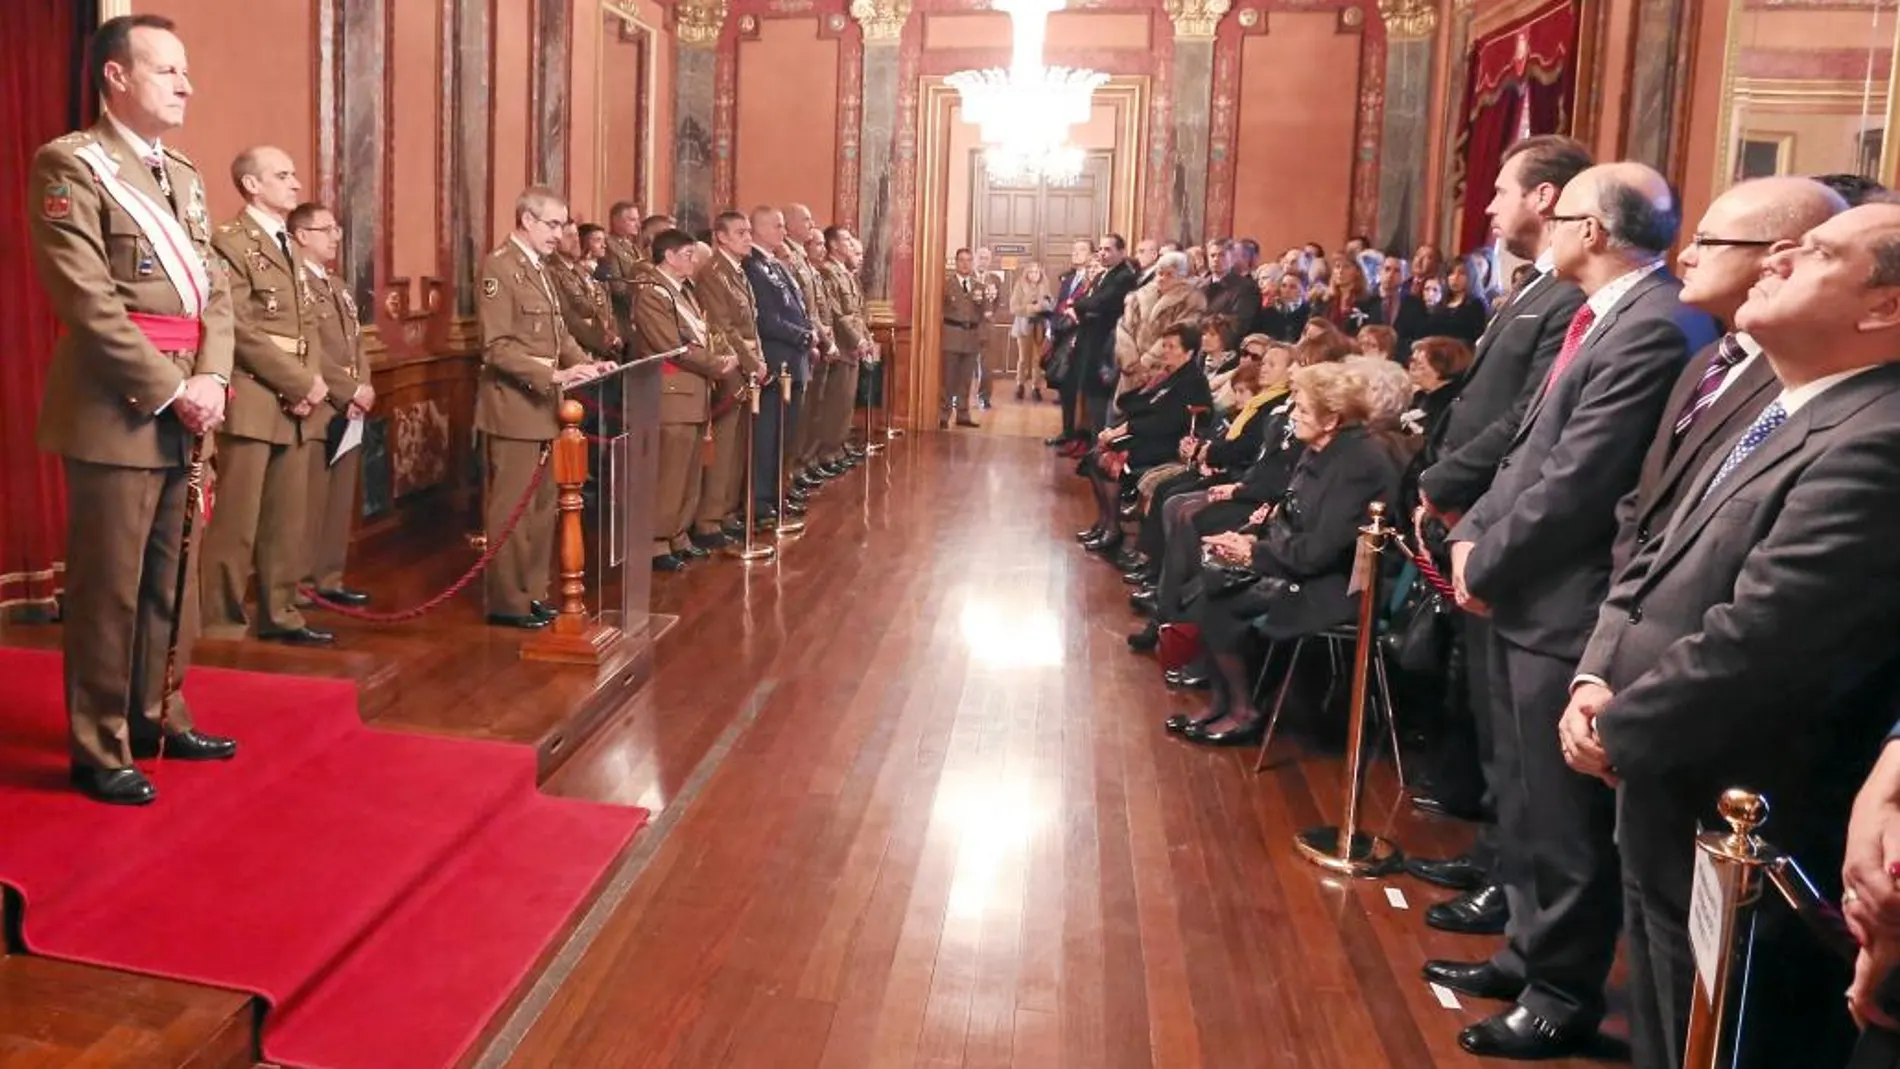 Momento del acto en honor a la Inmaculada Concepción en el Salón del Trono del Palacio Real de Valladolid